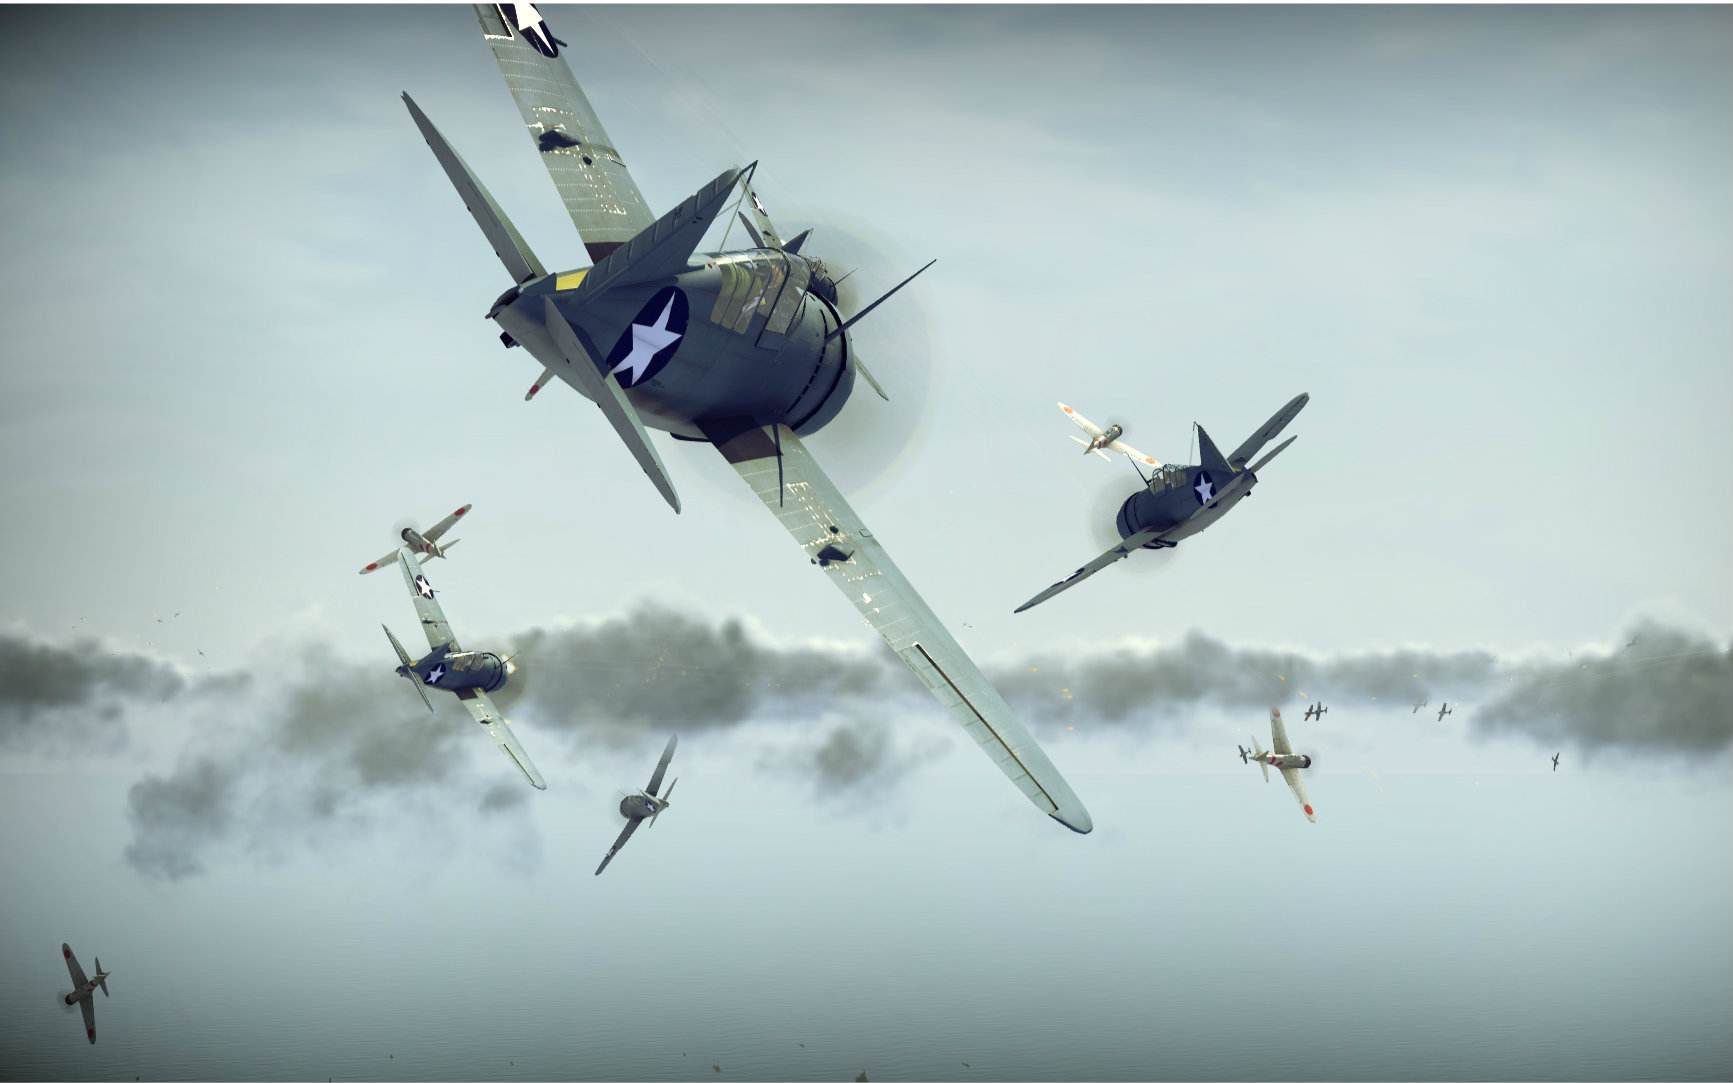 原创法国王牌飞行员首次正面击落飞机空战中尾追攻击还是主流吗